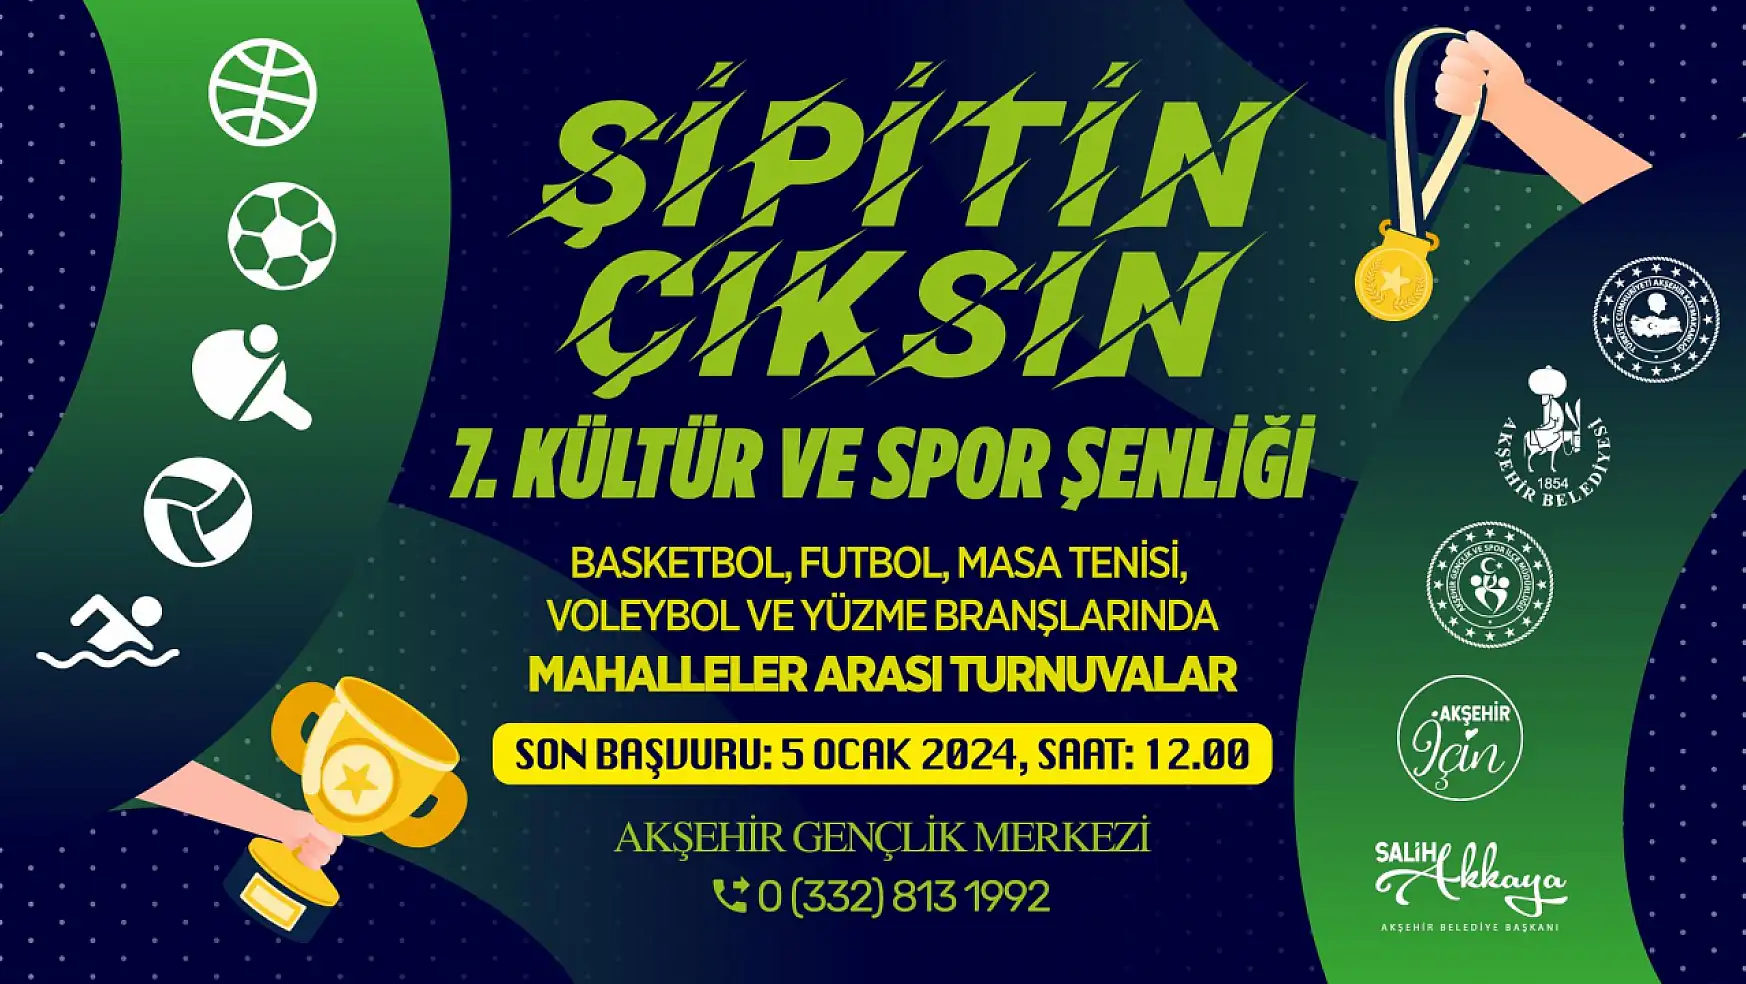 Akşehir'de Şipitin Çıksın 7. Kültür ve Spor Şenliği müracaatları başladı!